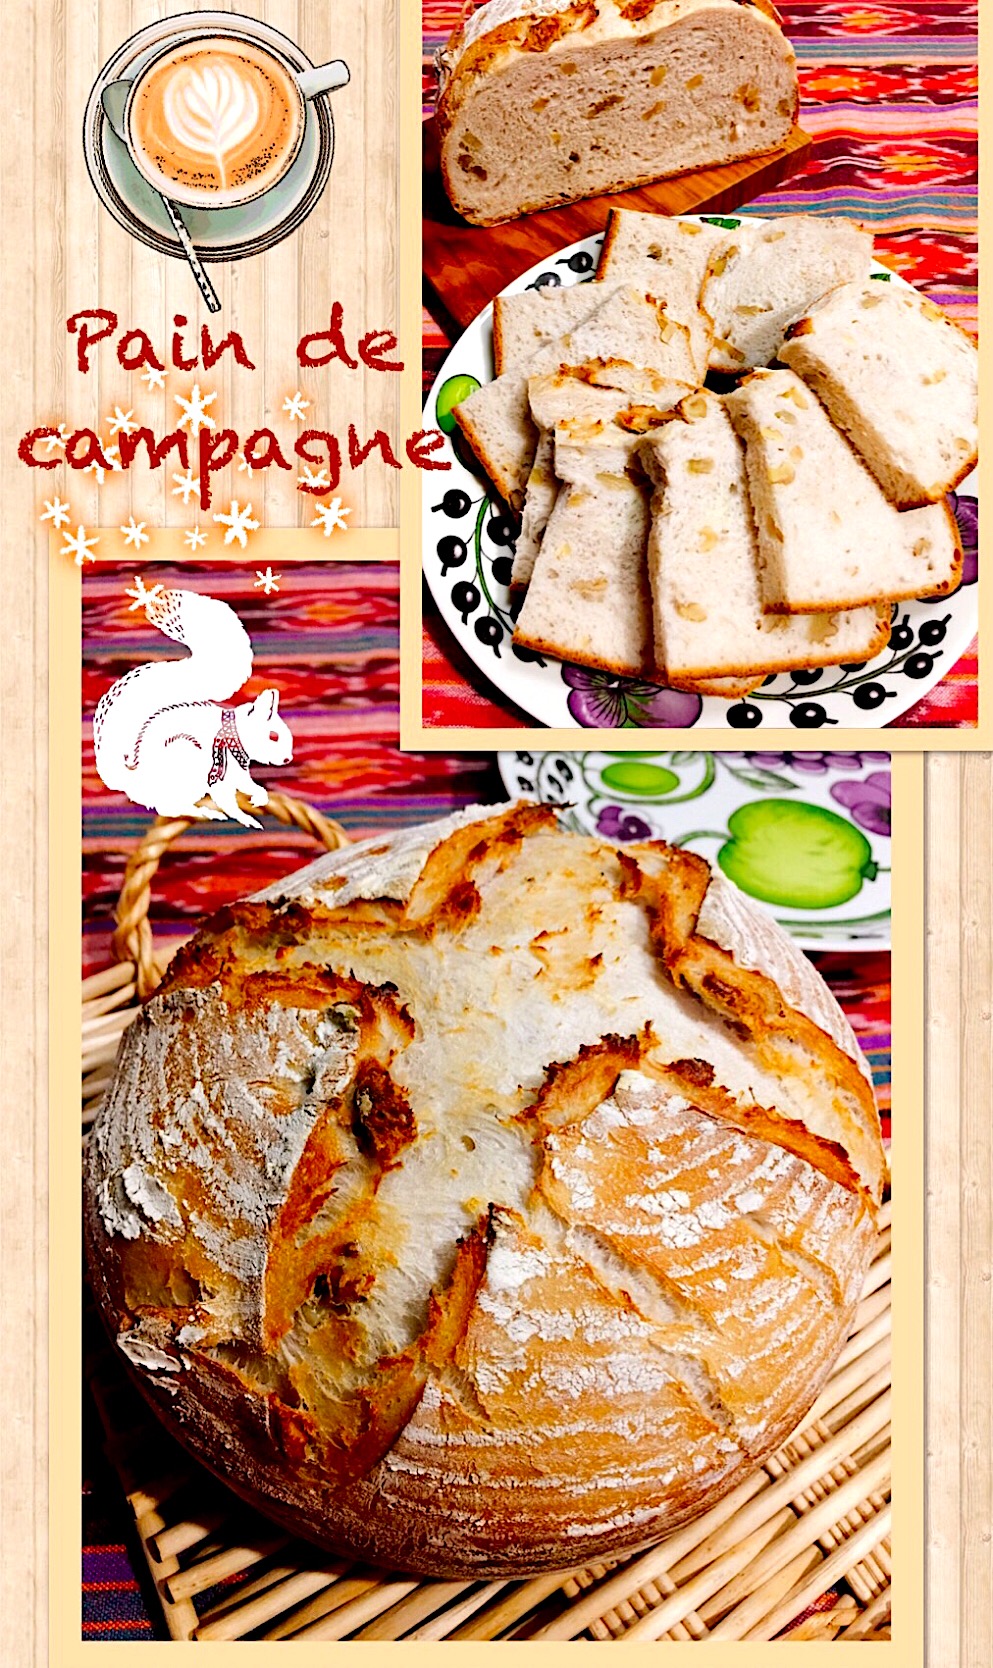 #パンドカンパーニュ #手作りパン  #くるみパン 
 #胡桃パン  #homemade #Paindecampagne 
 #おうちパン #リスドォル #酒粕パン